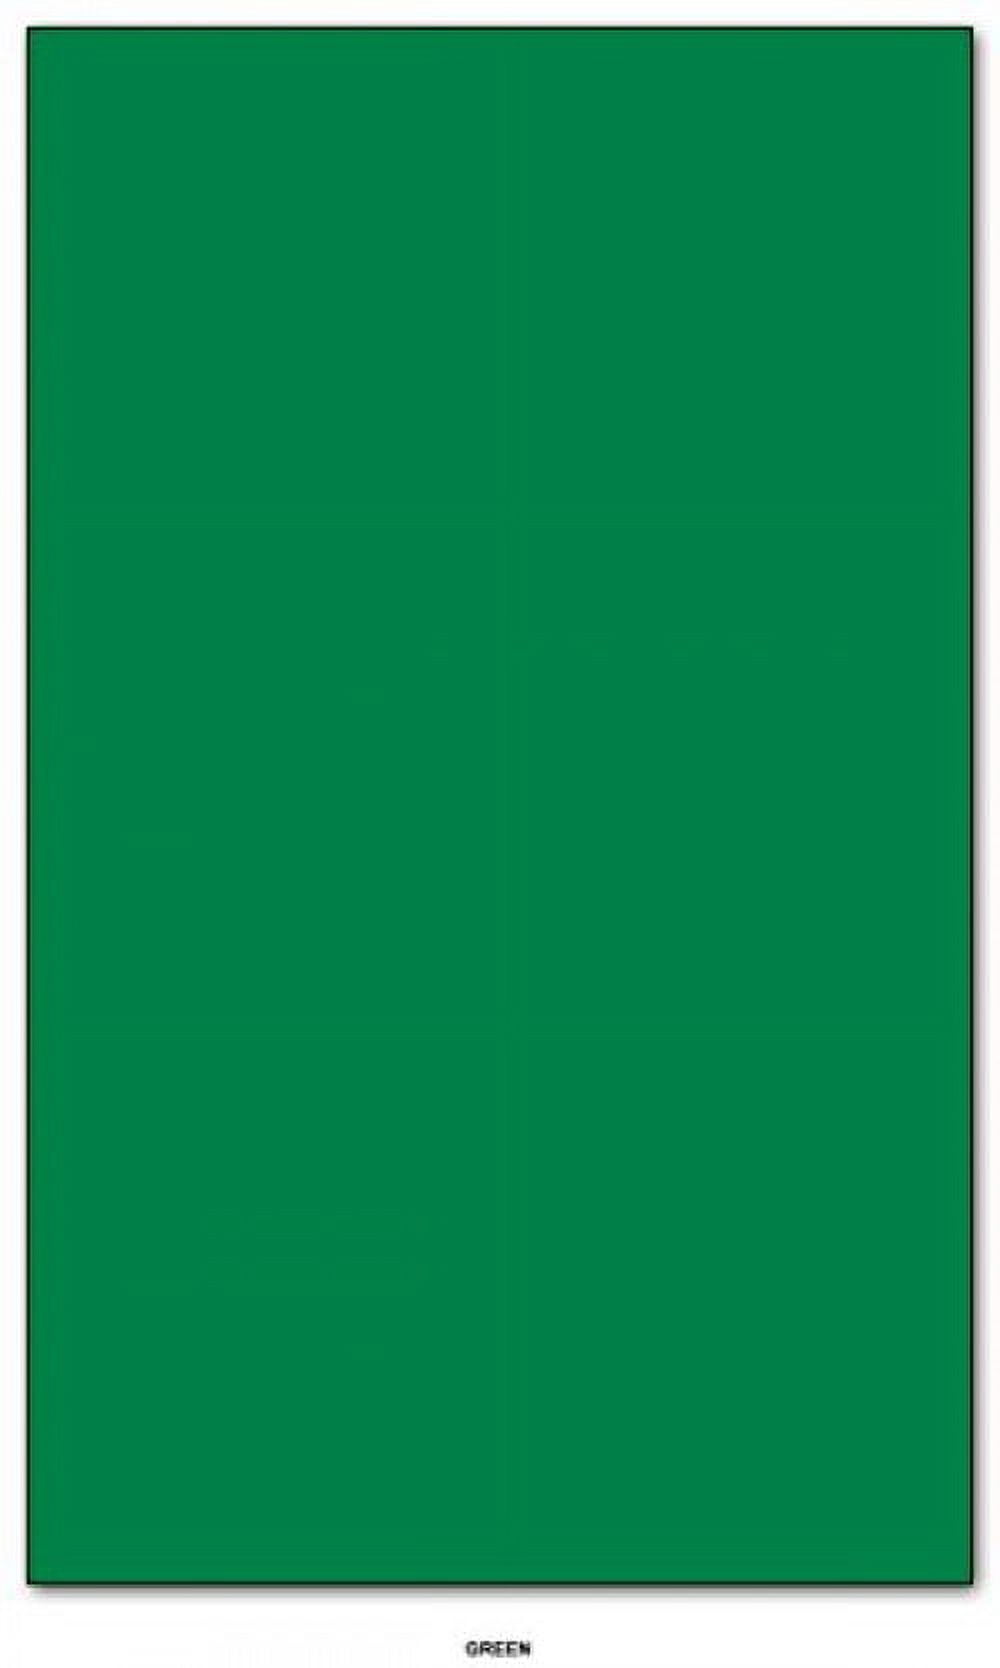 Mohawk BriteHue Bright Color Paper | Green | 24lb Bond / 60lb Text Paper |  8.5 x 14 (Legal Size) | 100 Sheets Per Pack